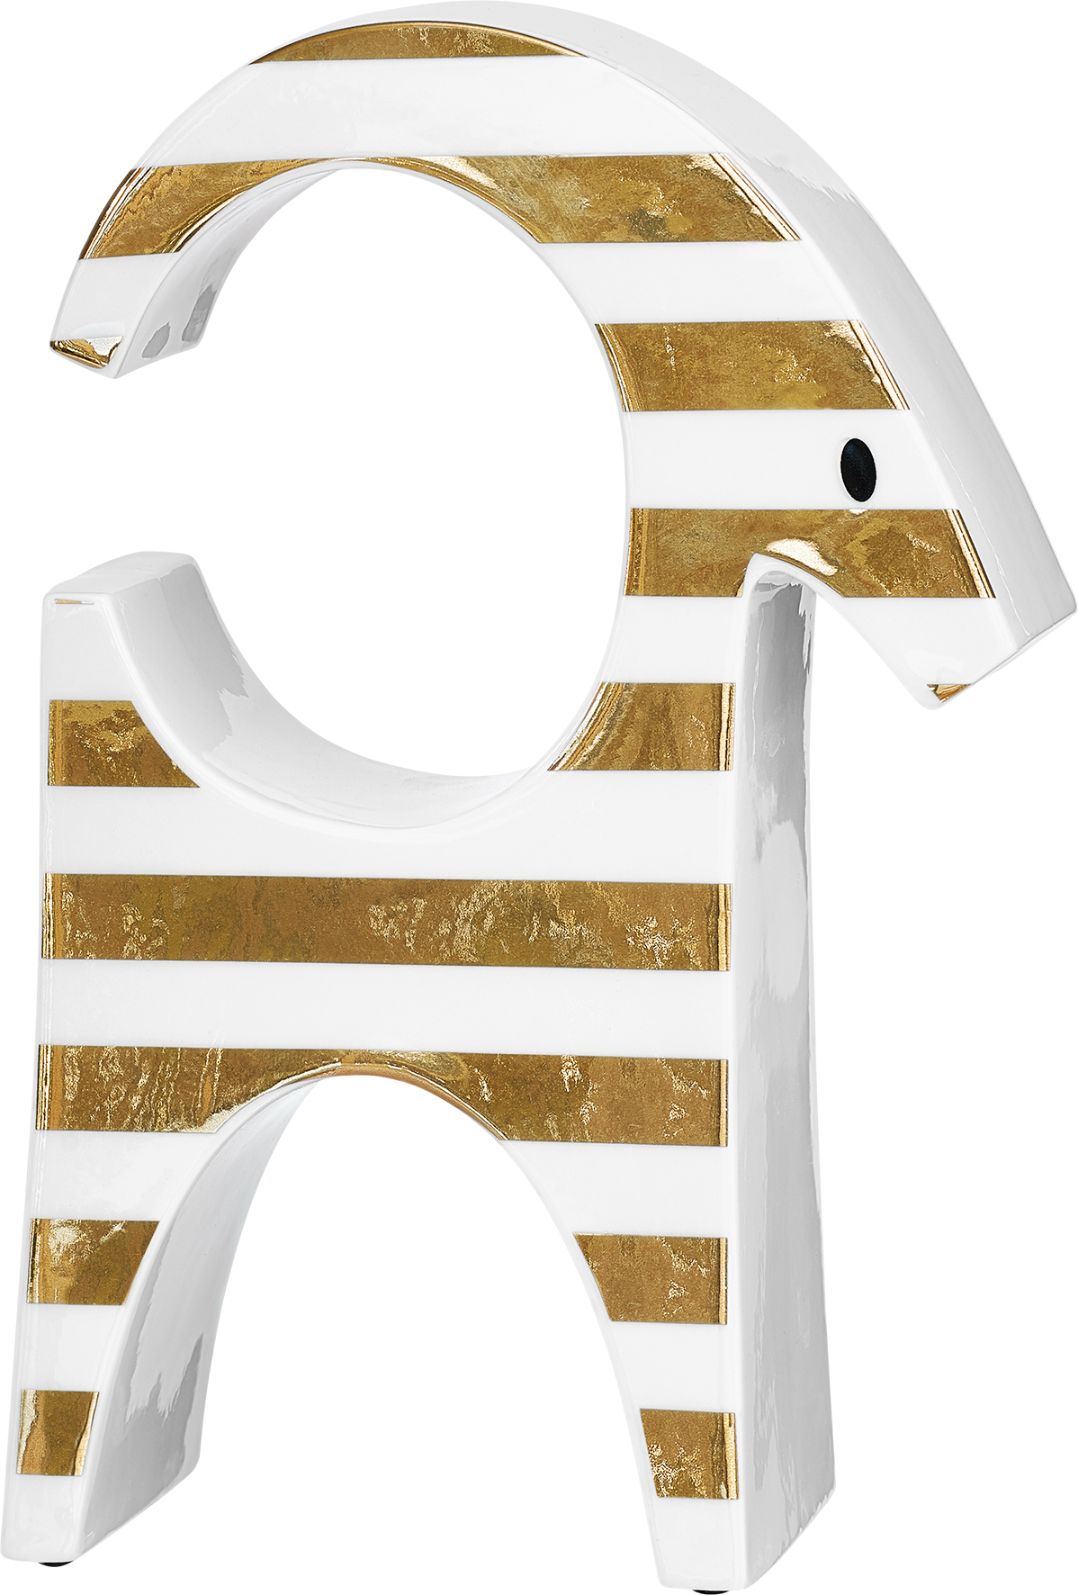 Polkabock S i vitt och guld från Cult design höjd 17 cm i stengods